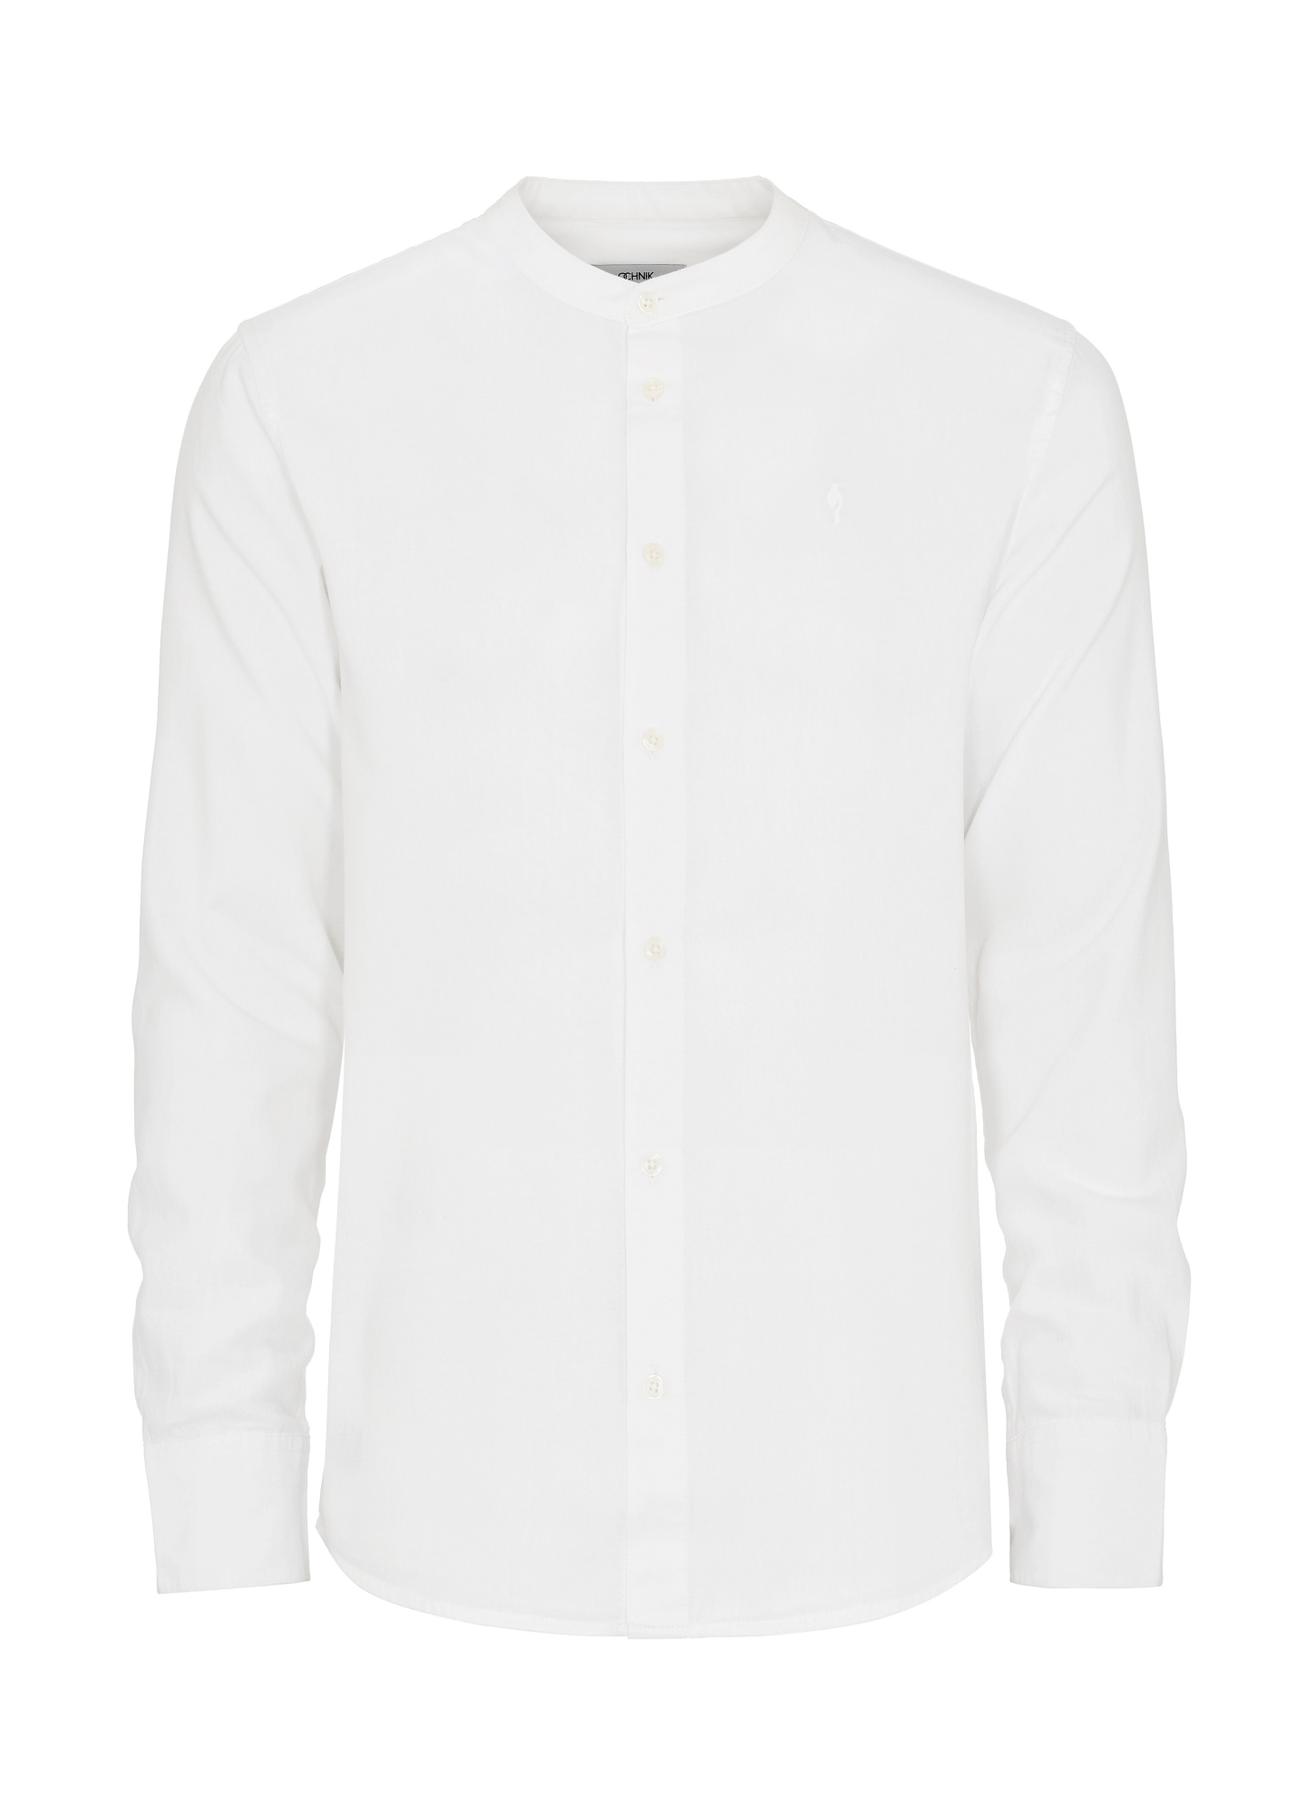 Biała koszula bez kołnierzyka męska KOSMT-0326-11(W24)